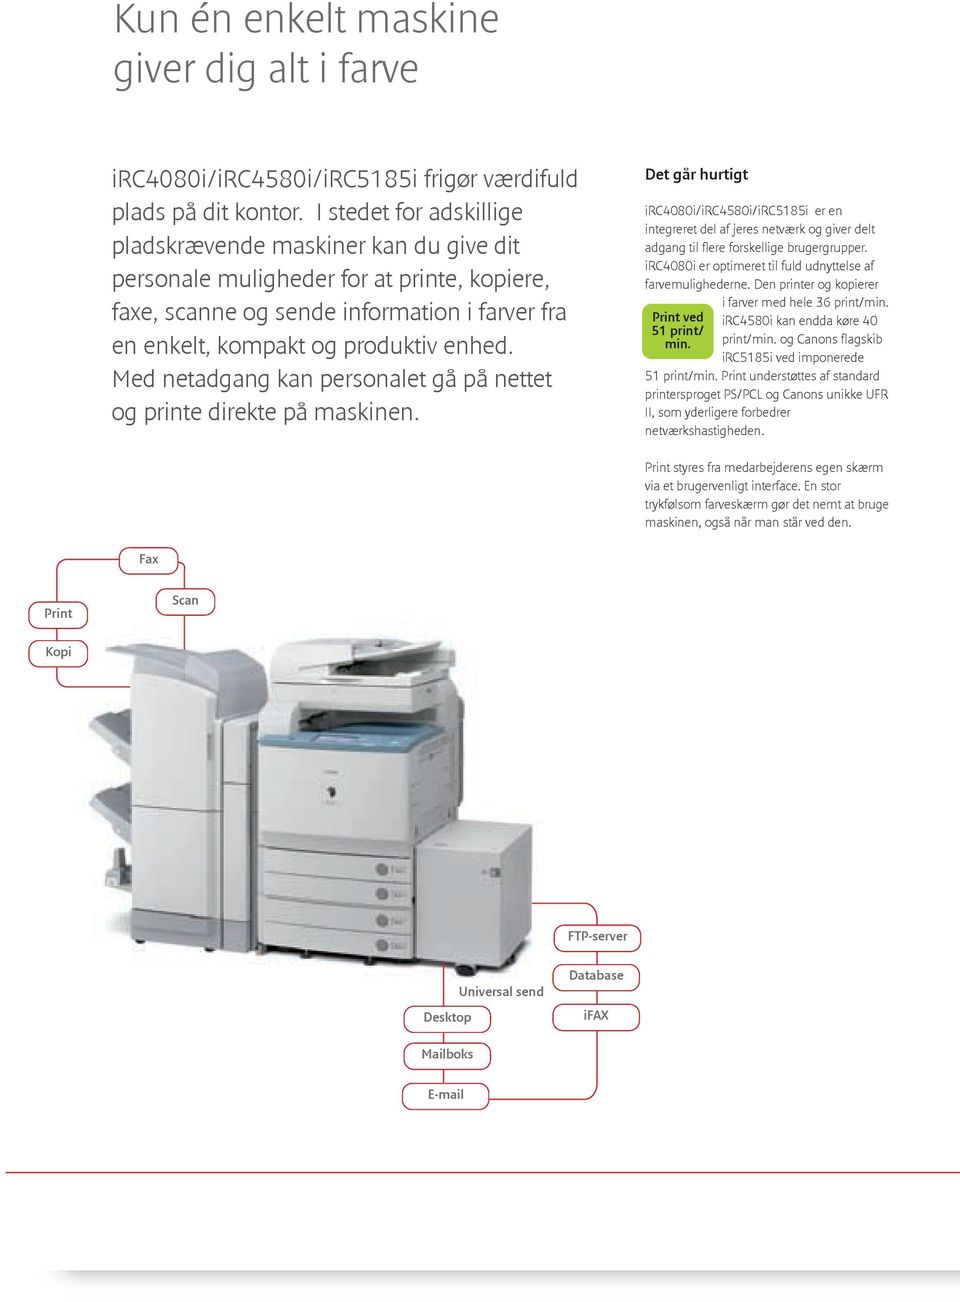 Med netadgang kan personalet gå på nettet og printe direkte på maskinen.